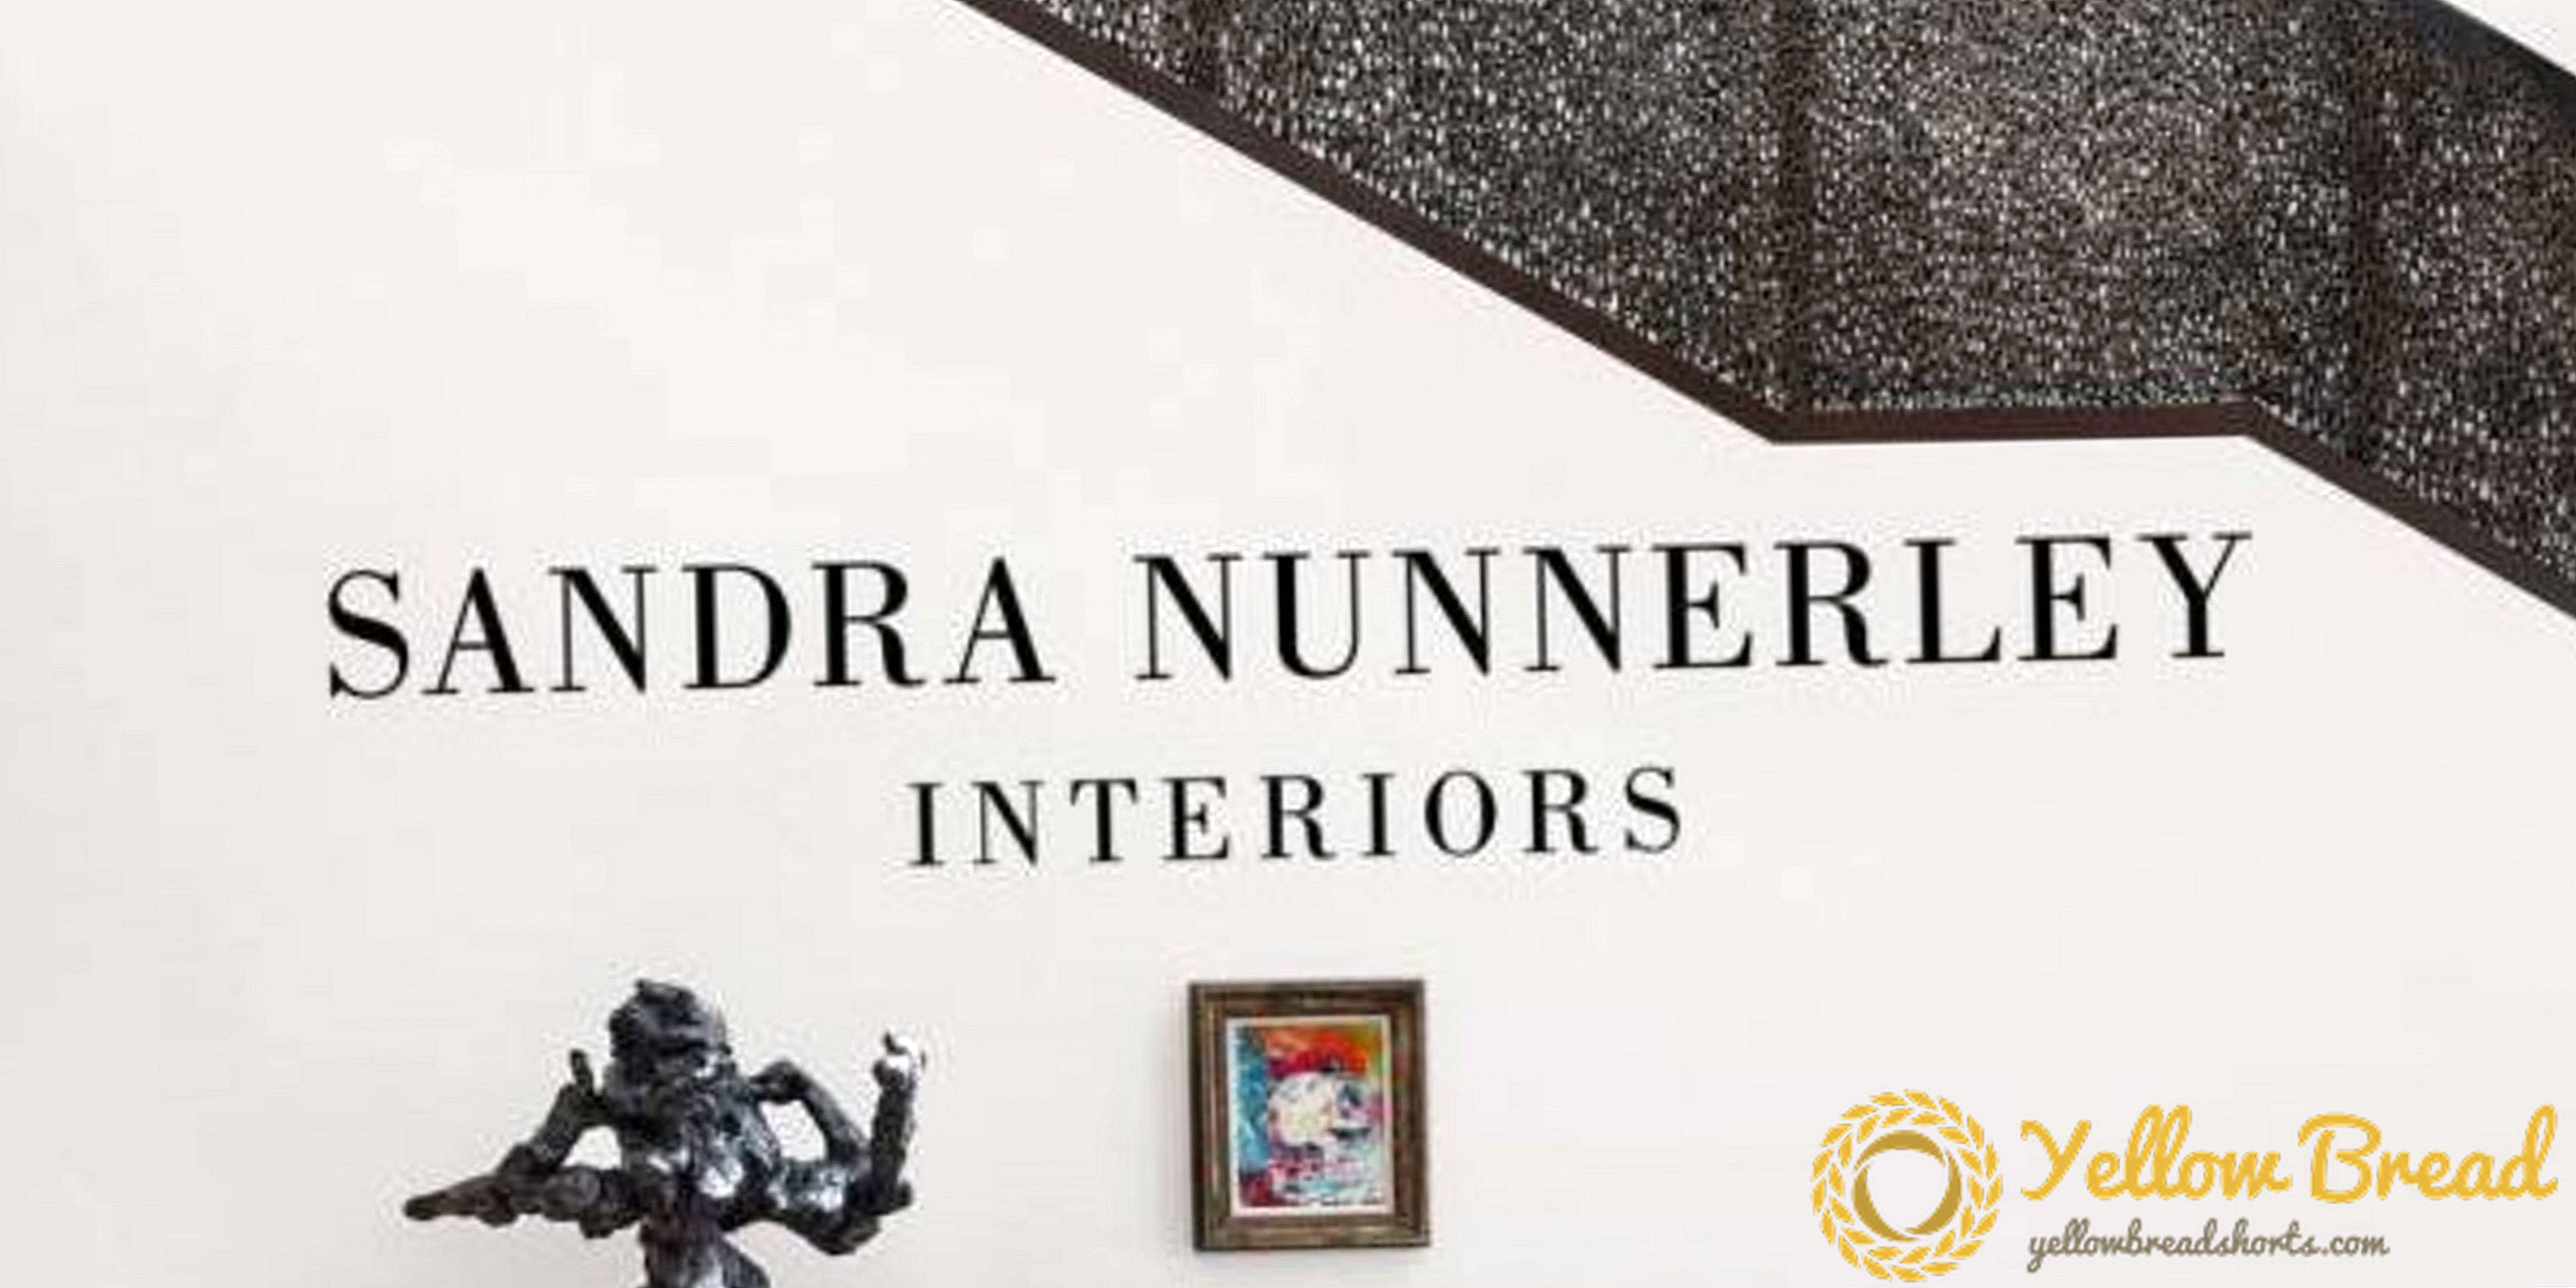 Un nouvel ouvrage de design: Chroniques des intérieurs inspirés par les voyages de Sandra Nunnerley